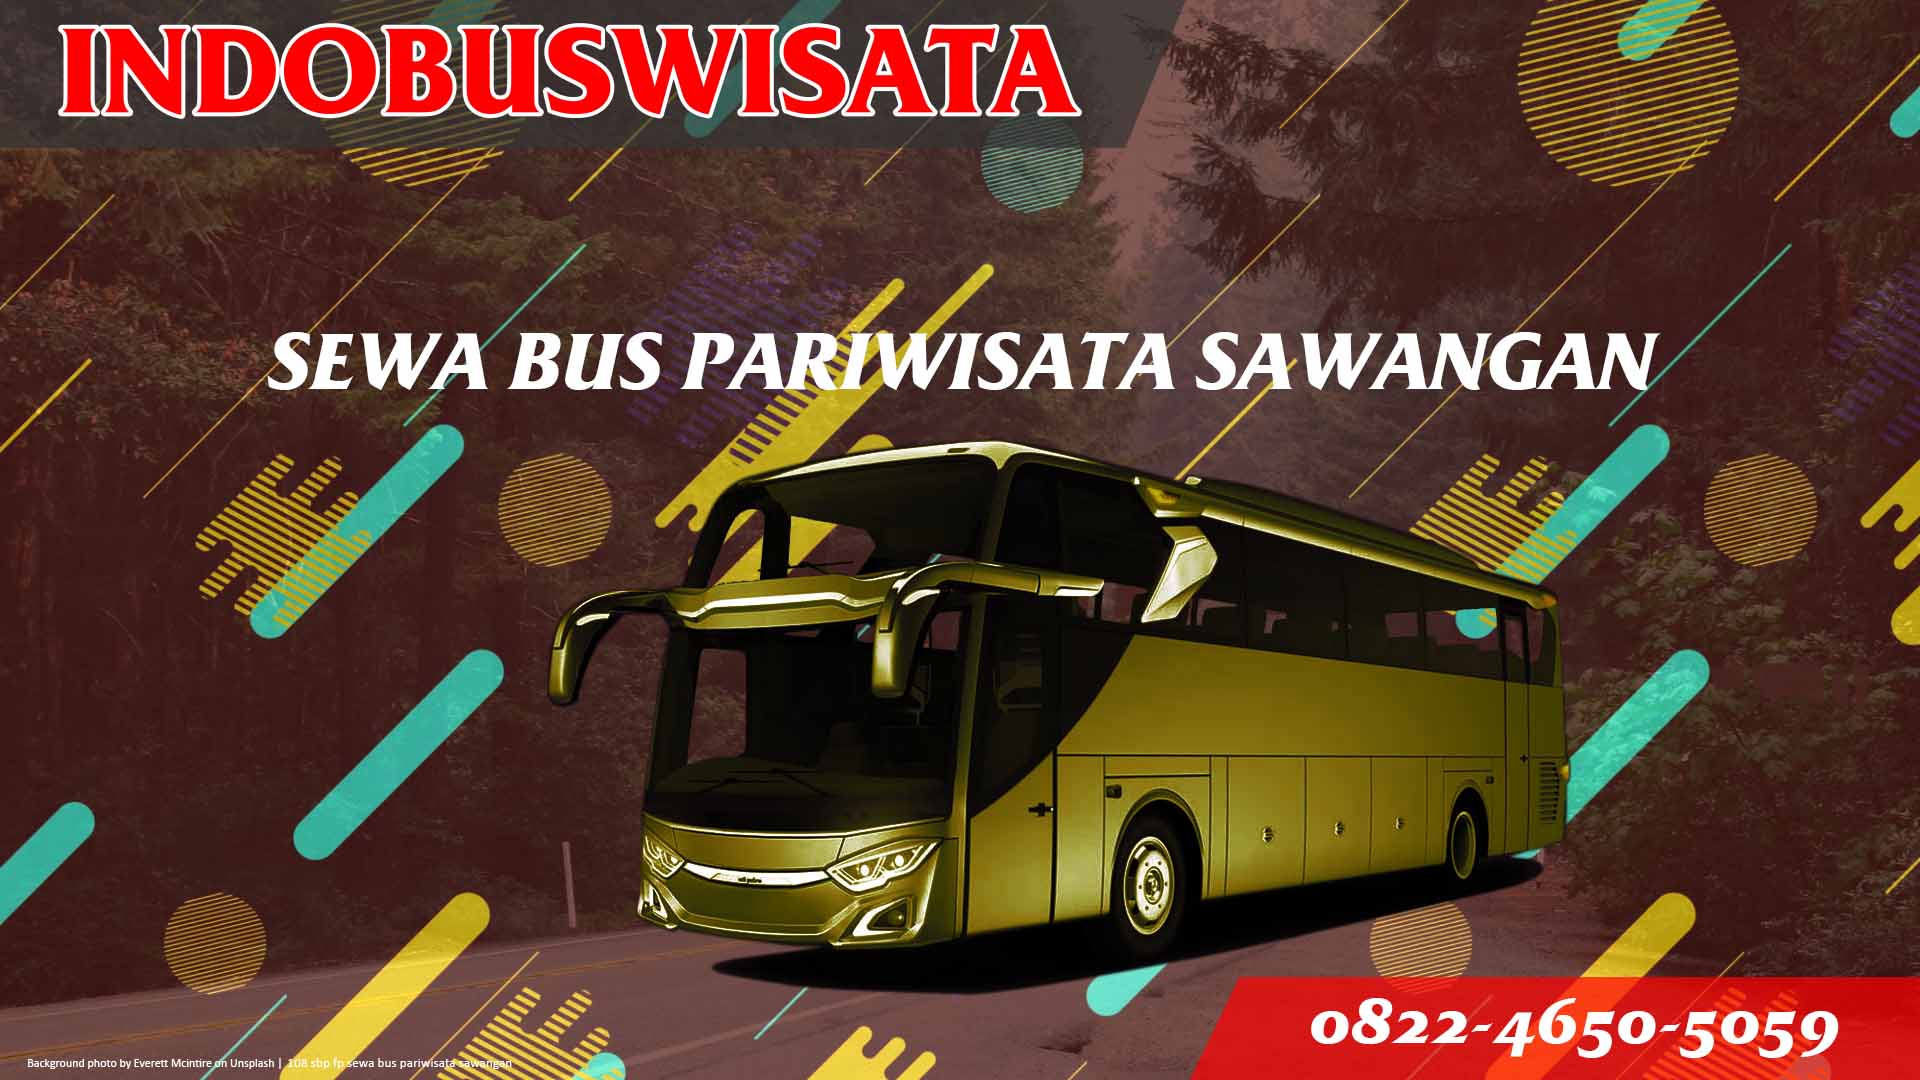 108 Sbp Fp Sewa Bus Pariwisata Sawangan Indobuswisata